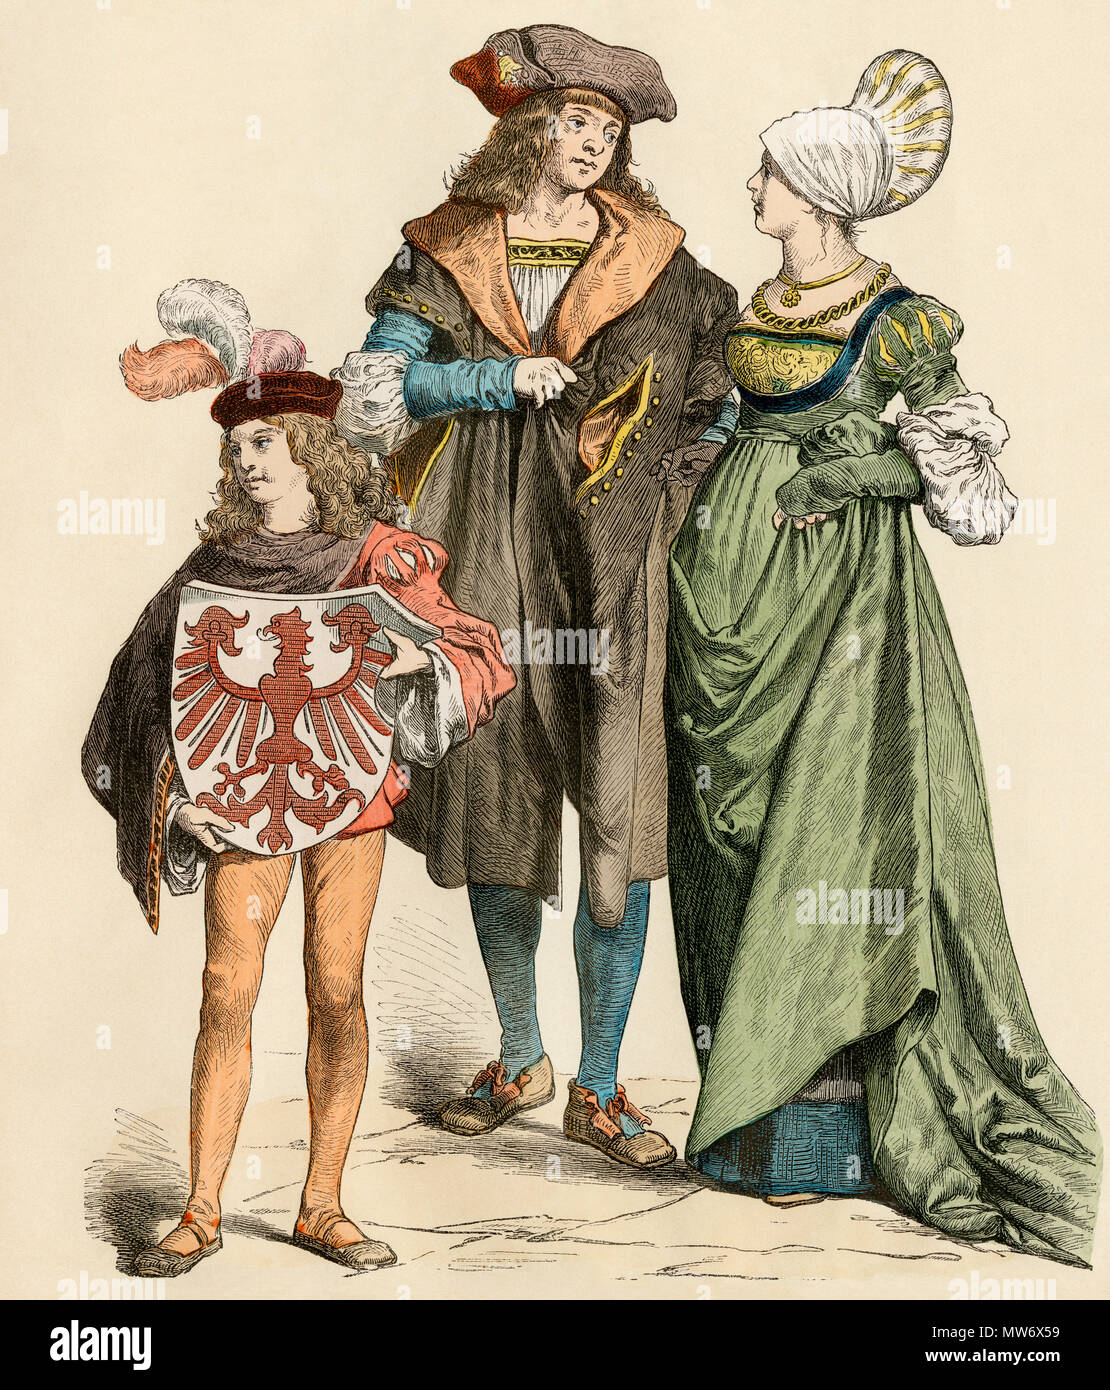 Próspera clase media urbana, los alemanes o los burghers, 1500s. Mano de color imprimir Foto de stock